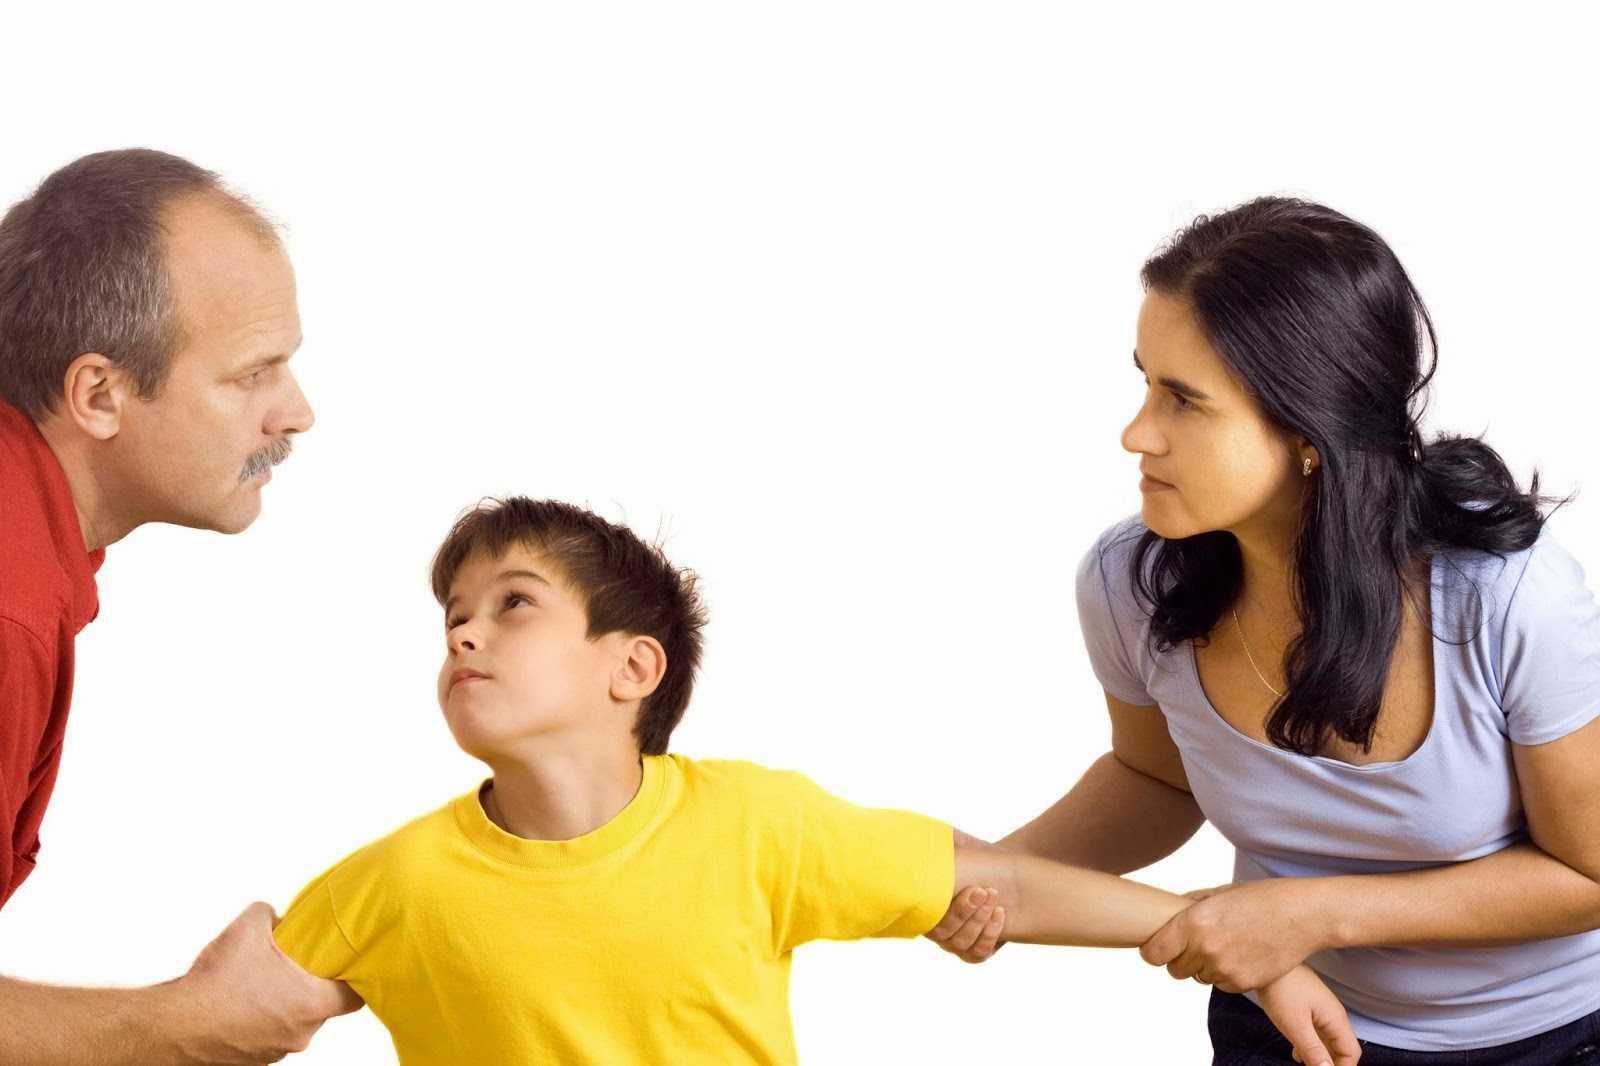 Сын и отчим – почему конфликтуют и не ладят: советы психолога